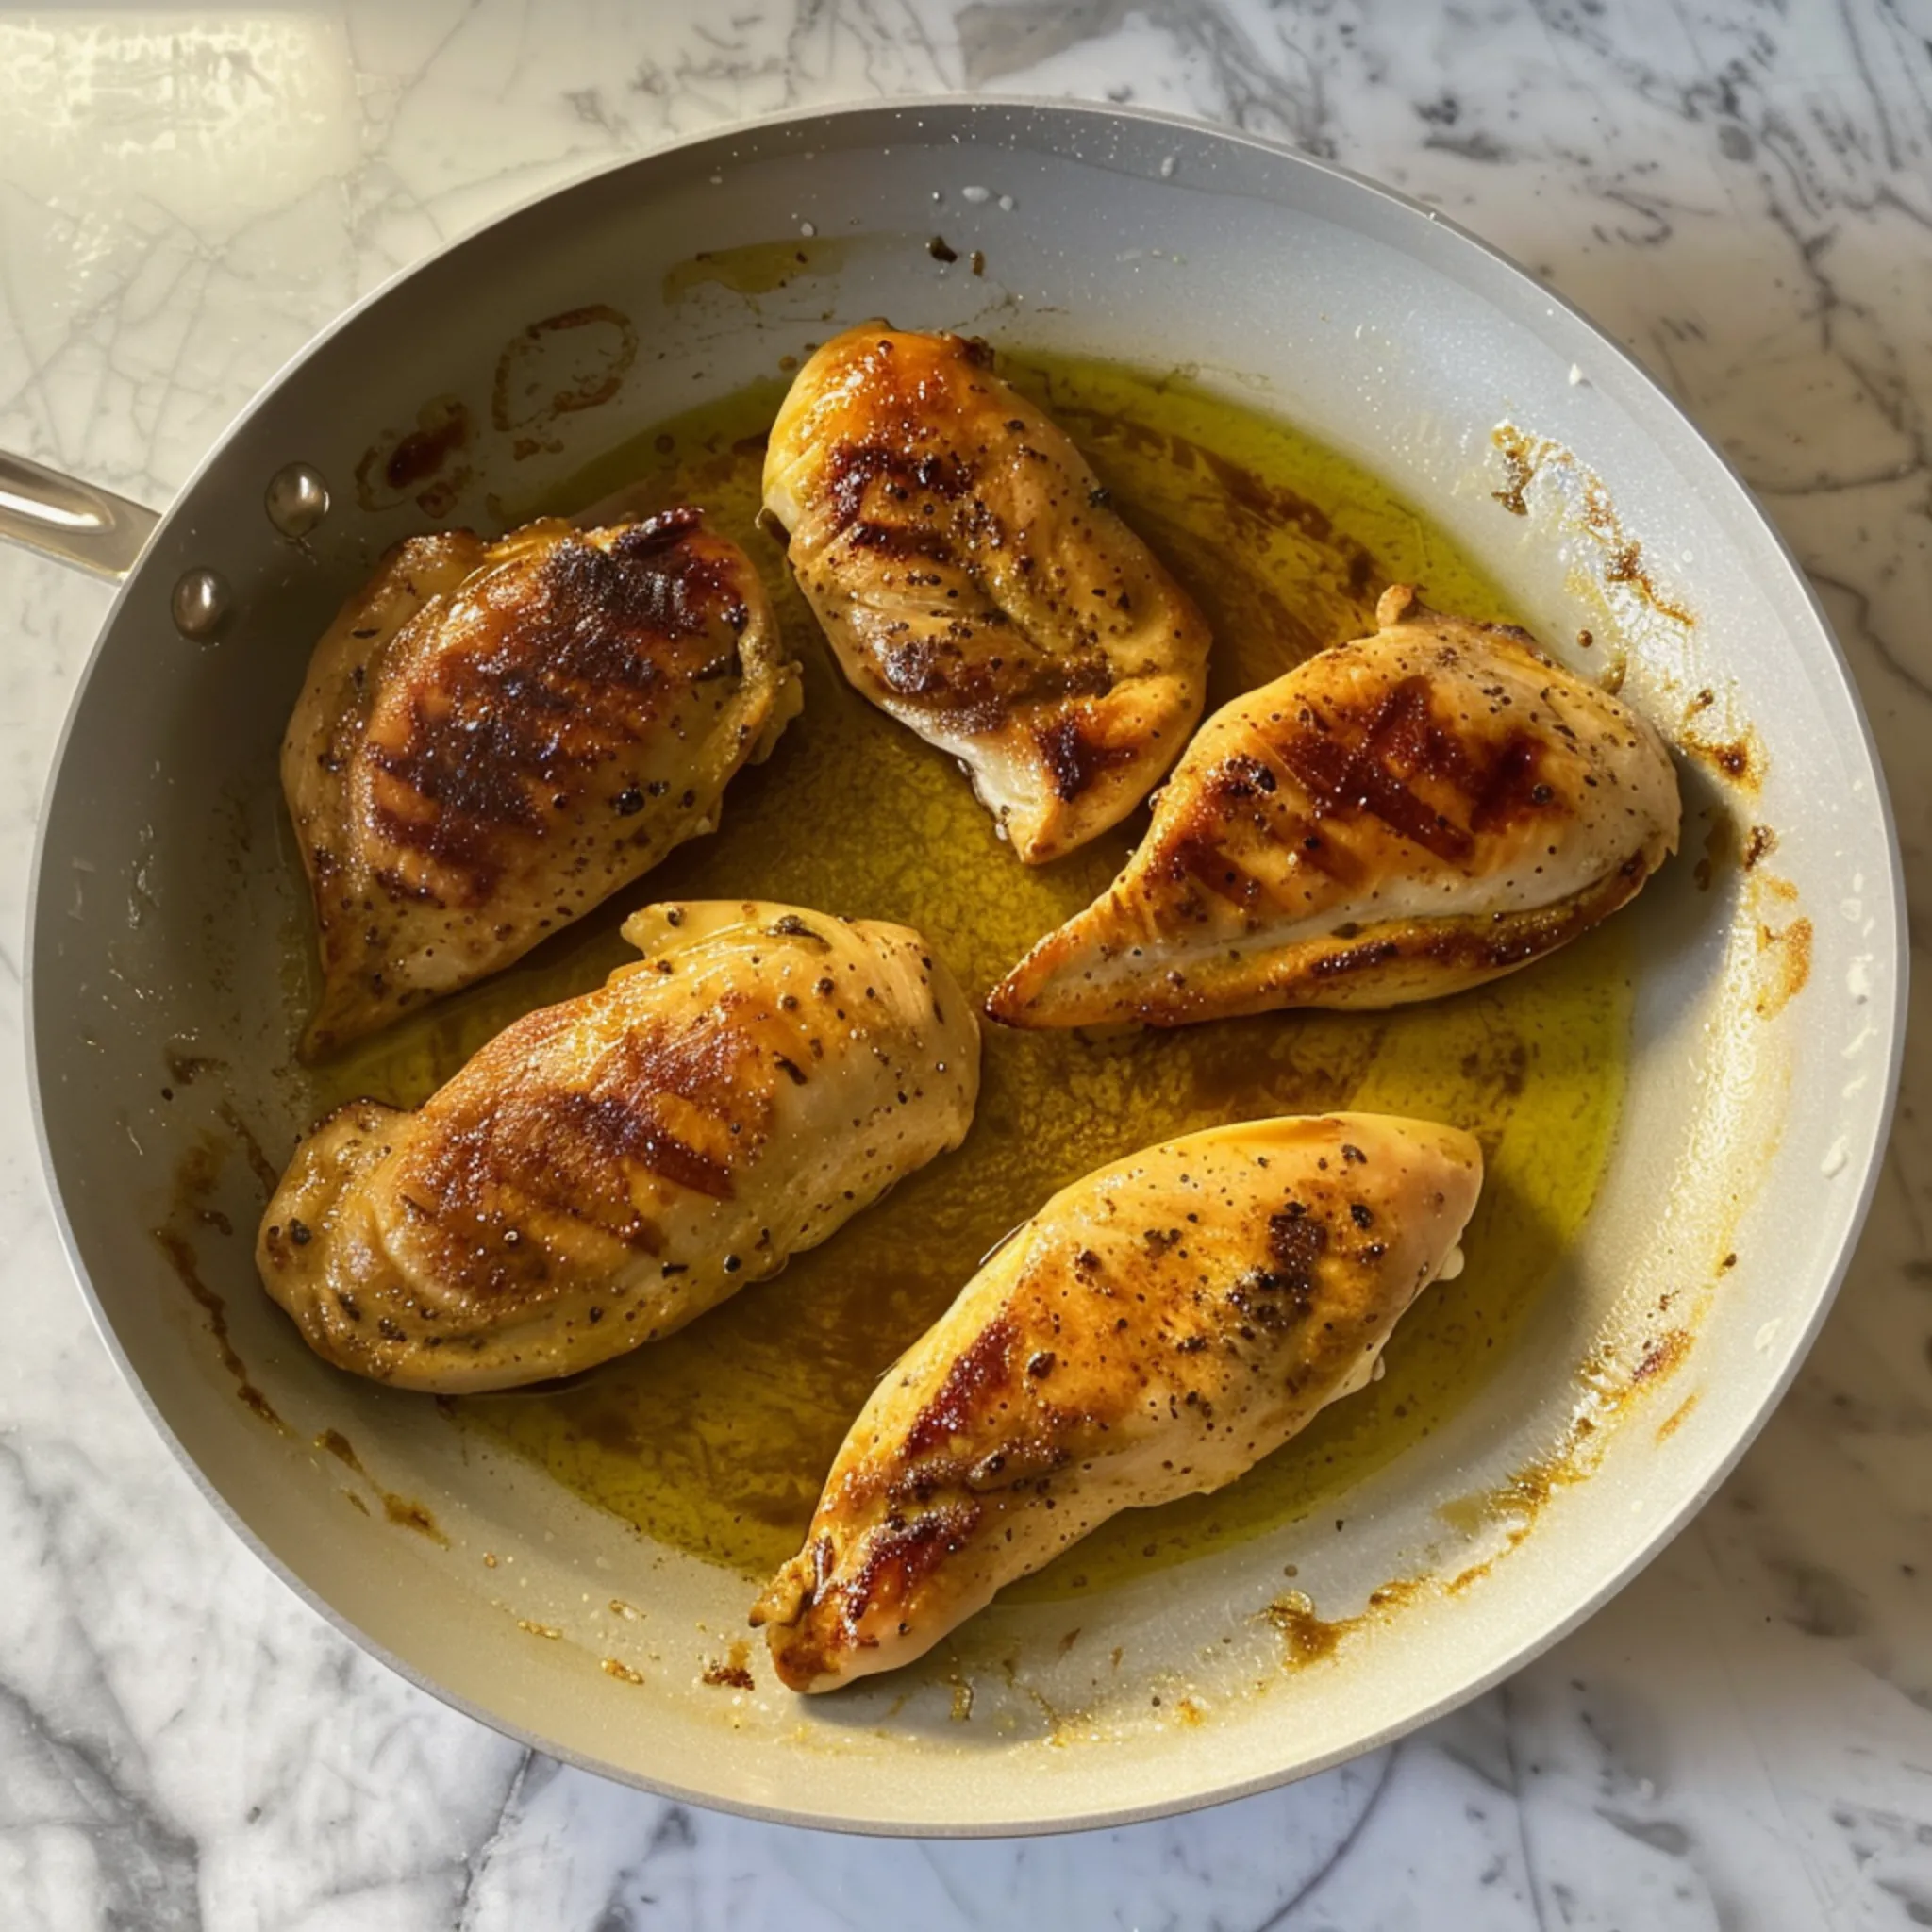 Chicken Perfection-Easy Chicken Marsala Recipe - Classic Italian-American Dish 
https://recipesgabriela.com/